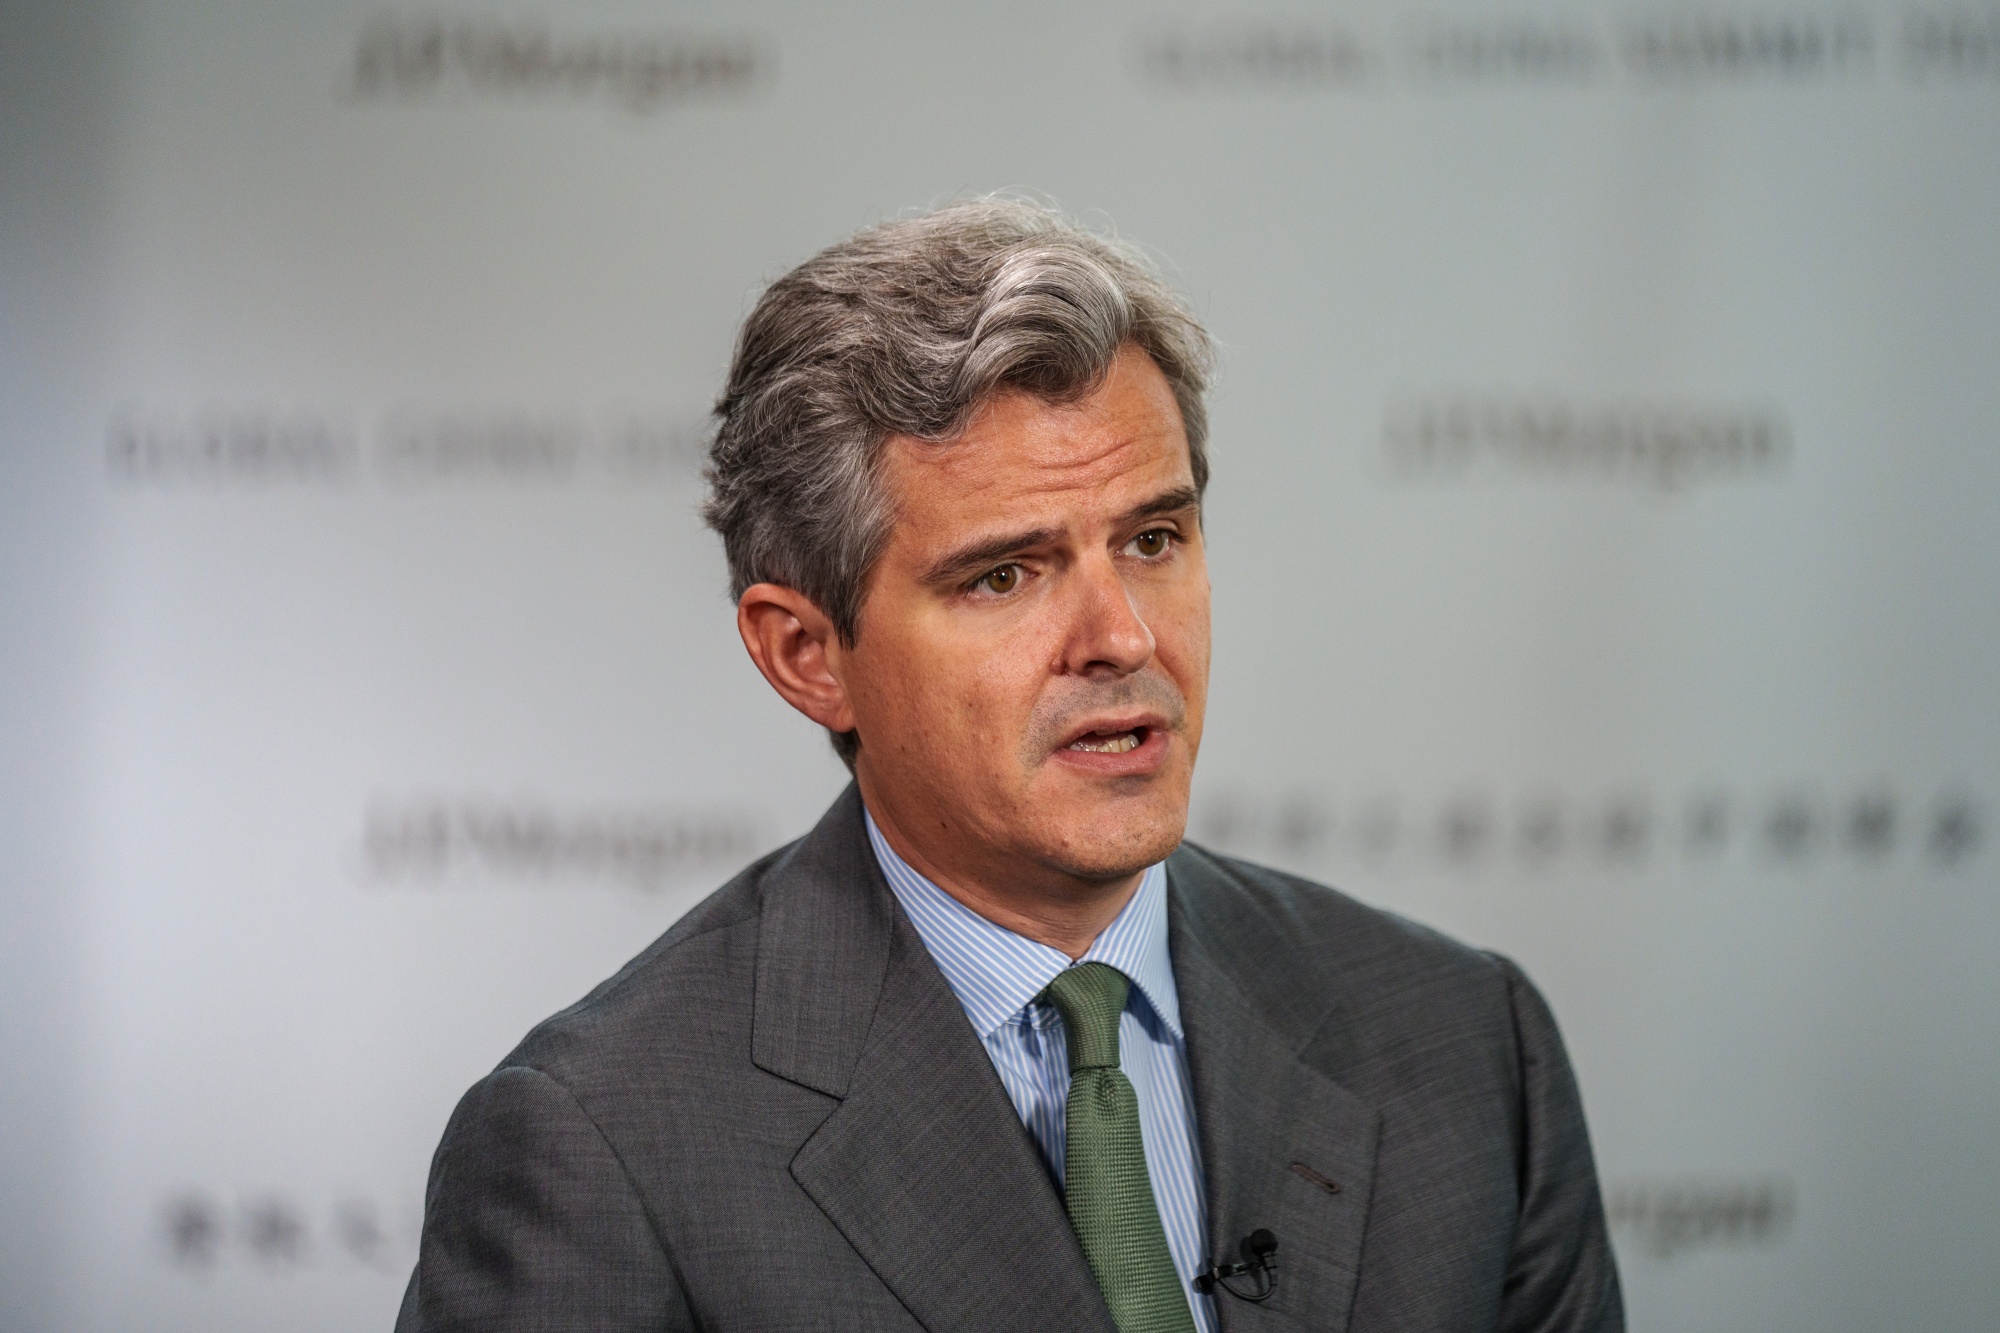 Key Interviews At the JPMorgan China Summit